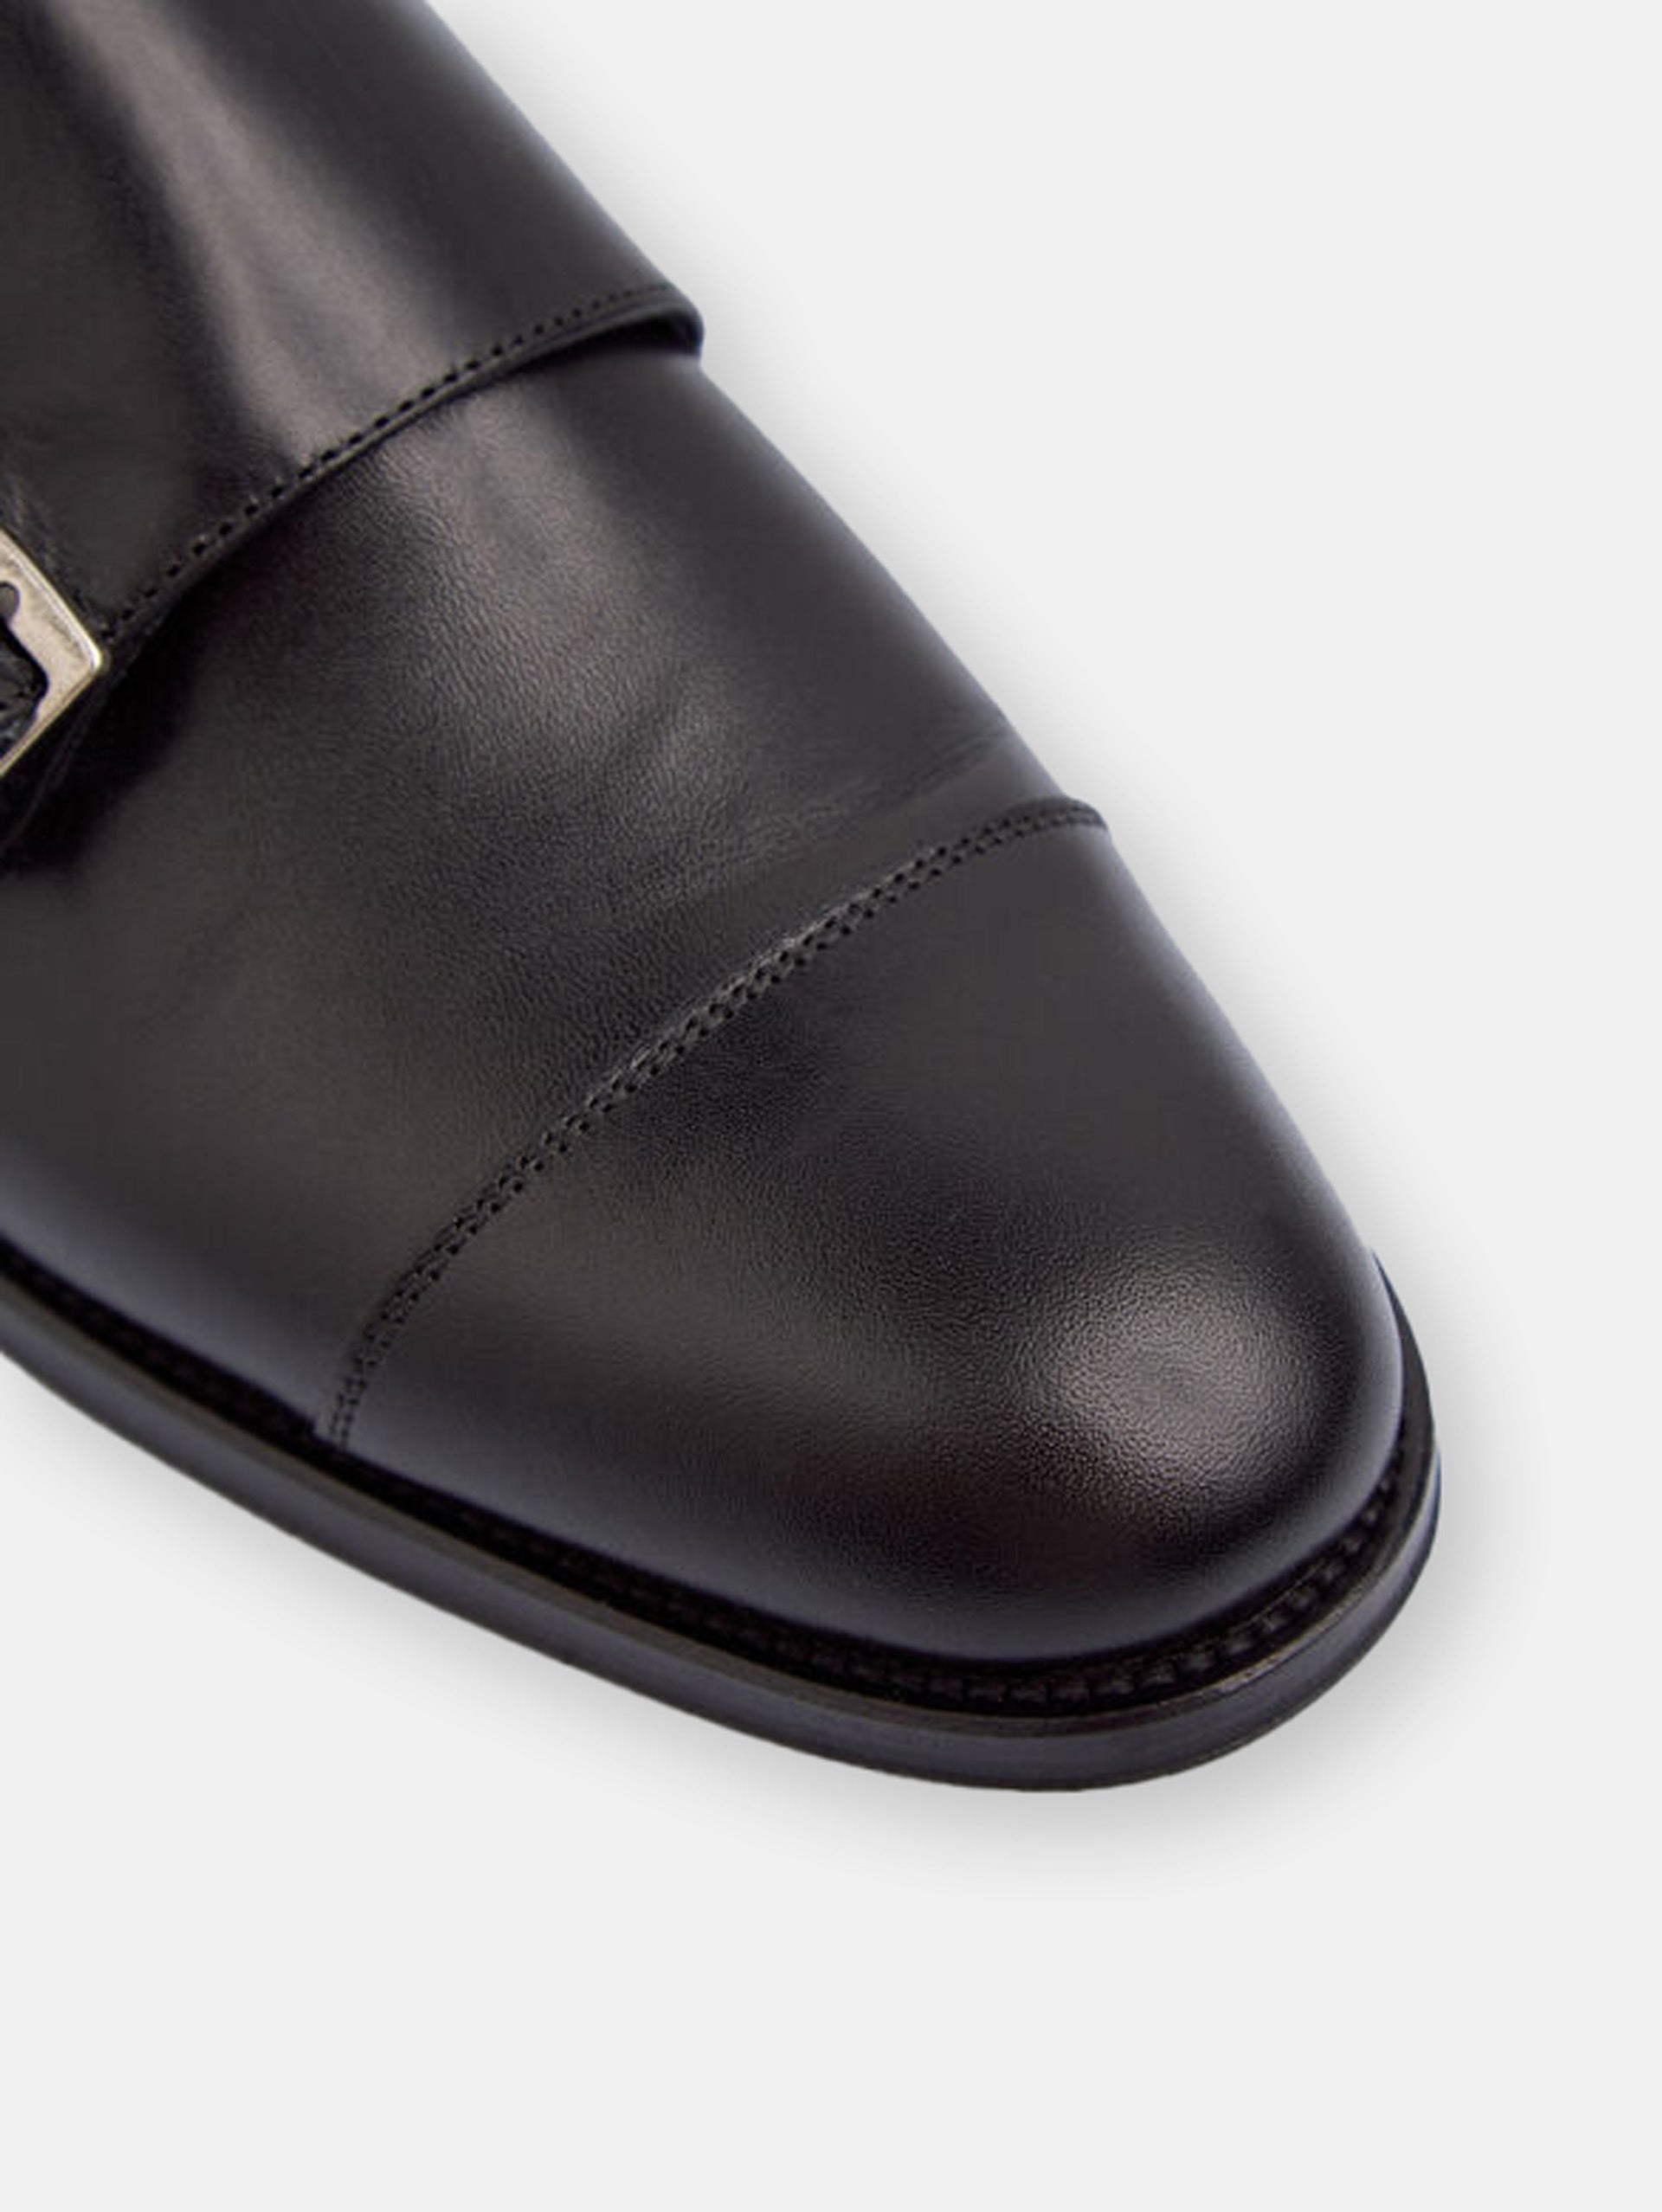 Black leather monkstrap dress shoe